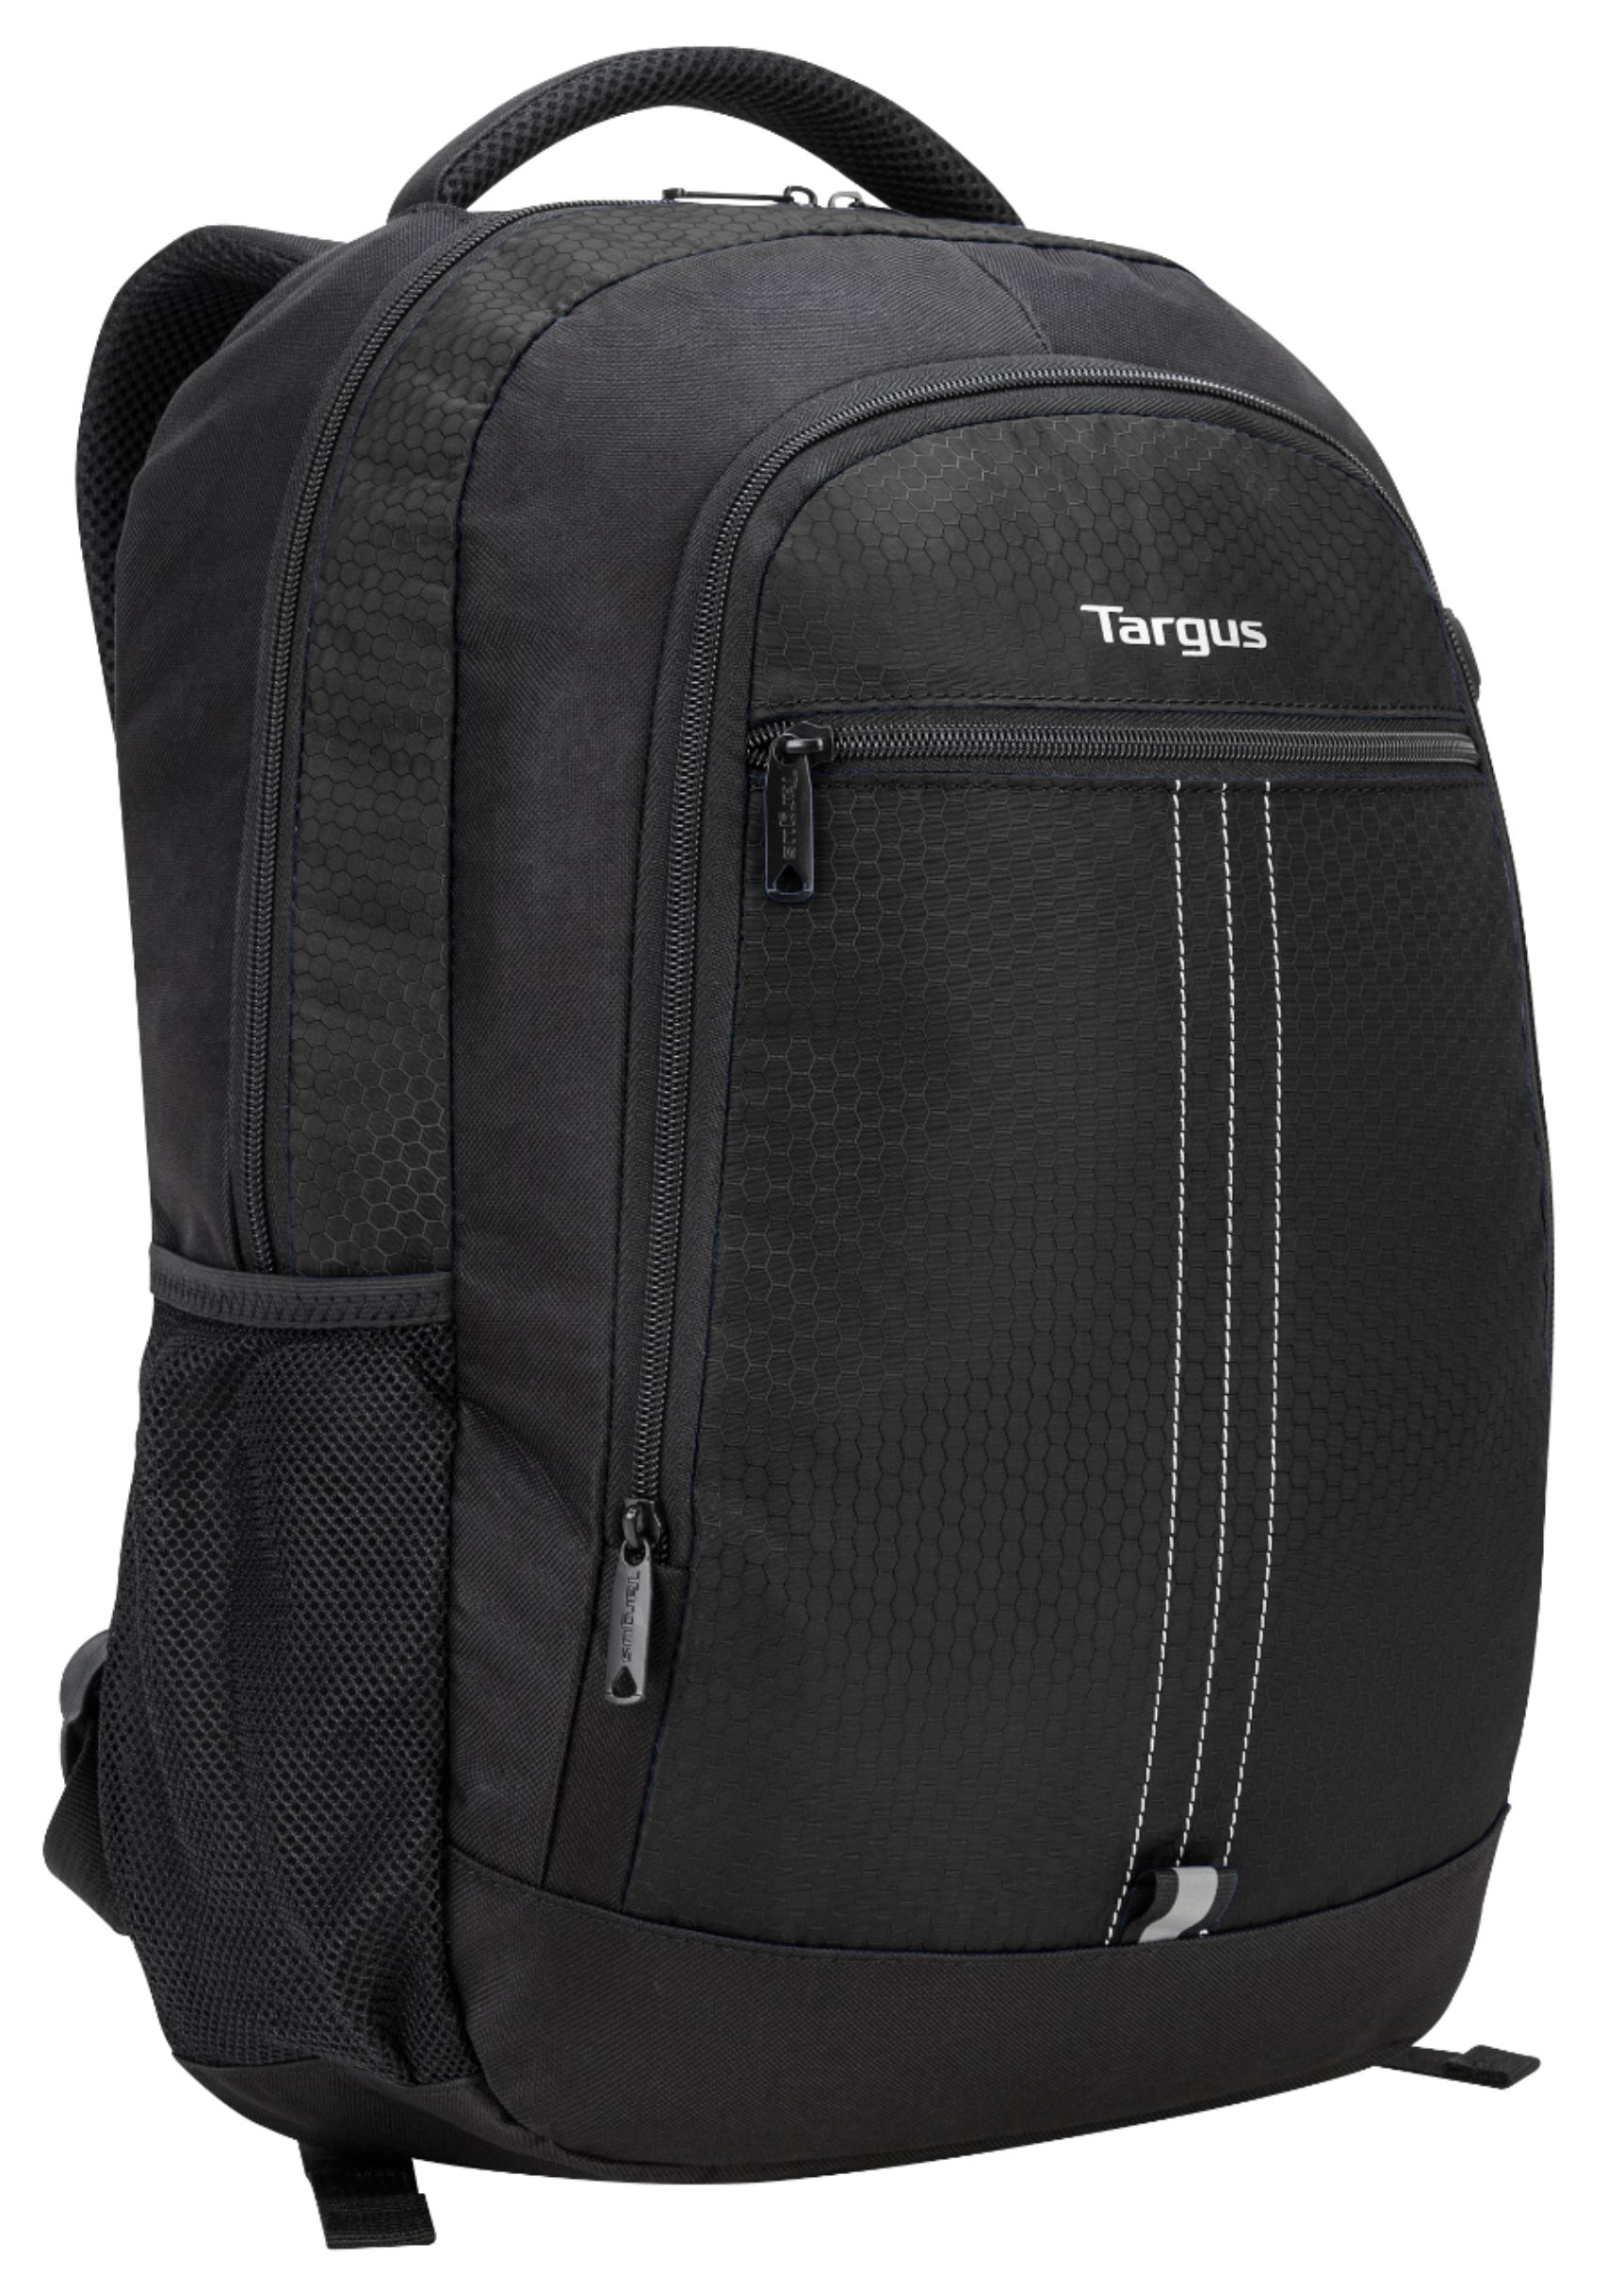 Customer Reviews: Targus City Laptop Backpack for 15.6